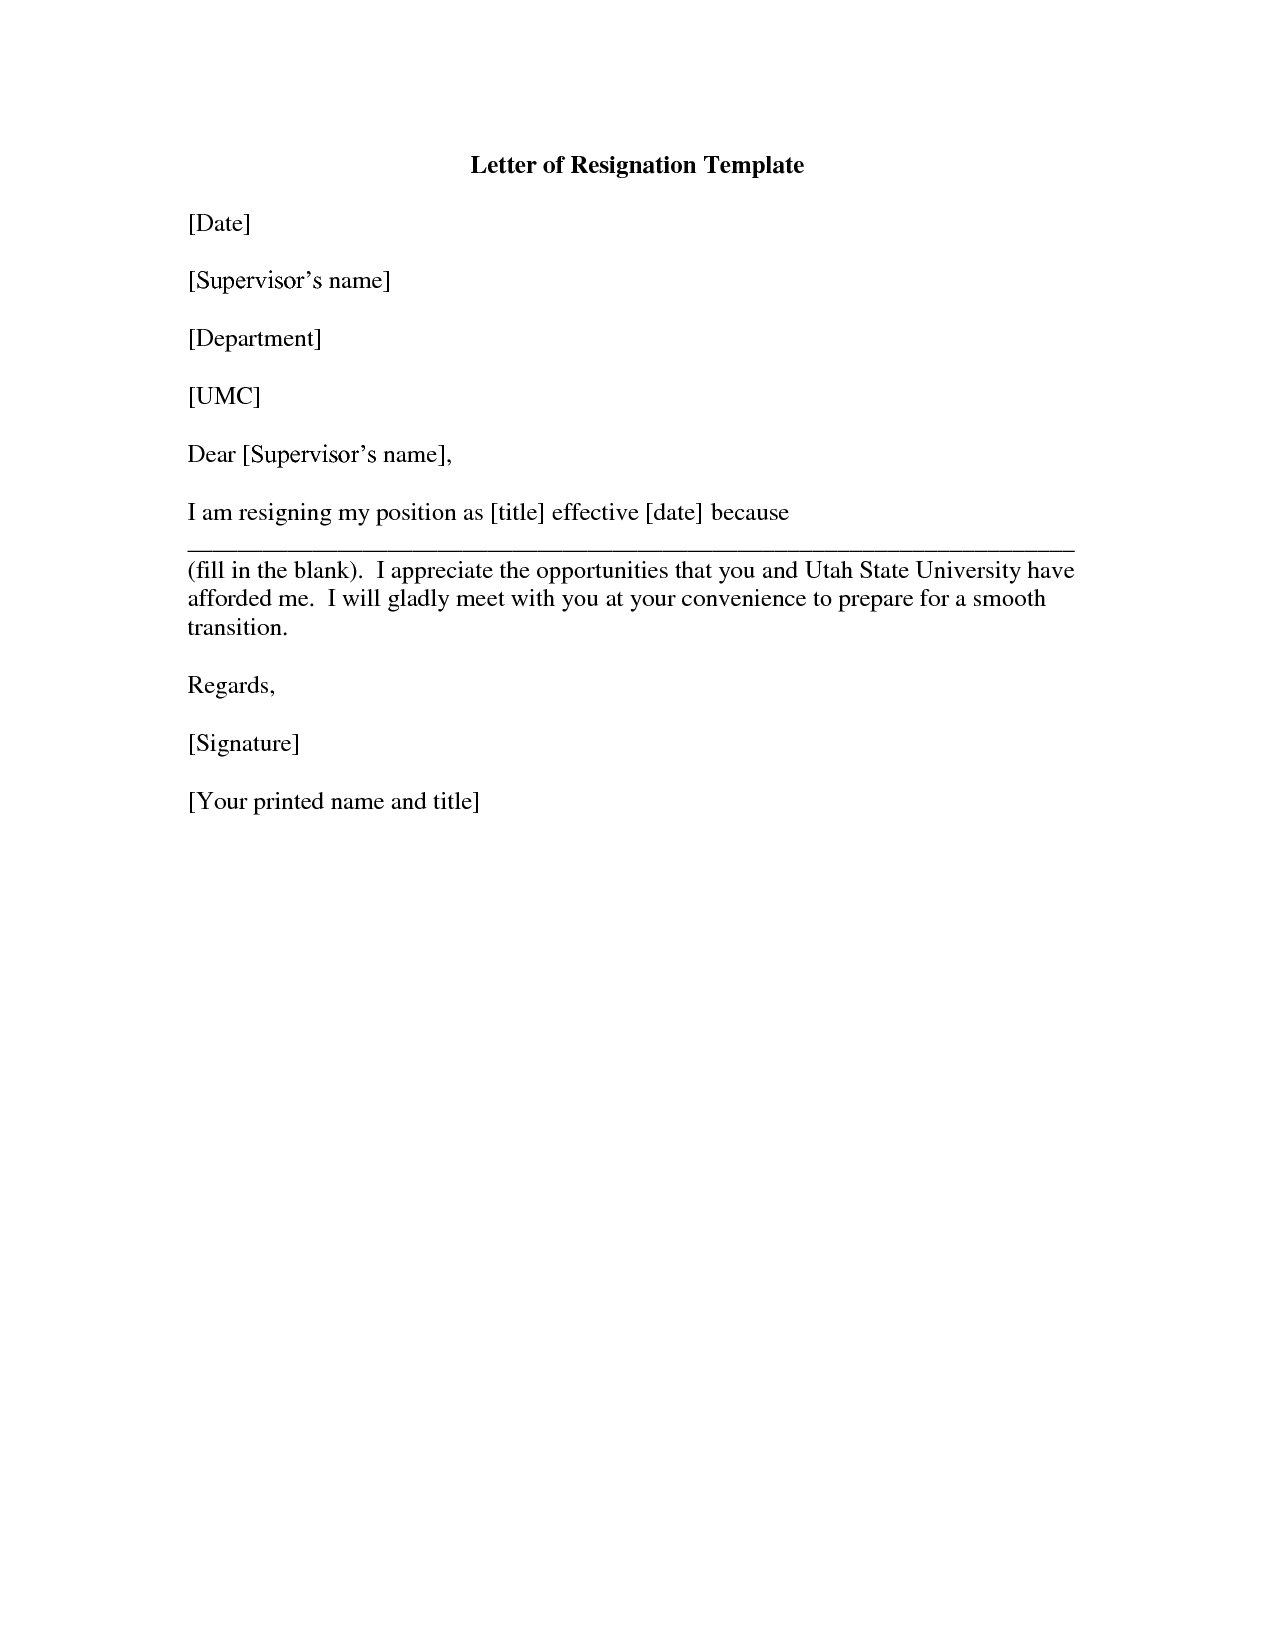 Letter of Resignation Template best resignation letter sample 